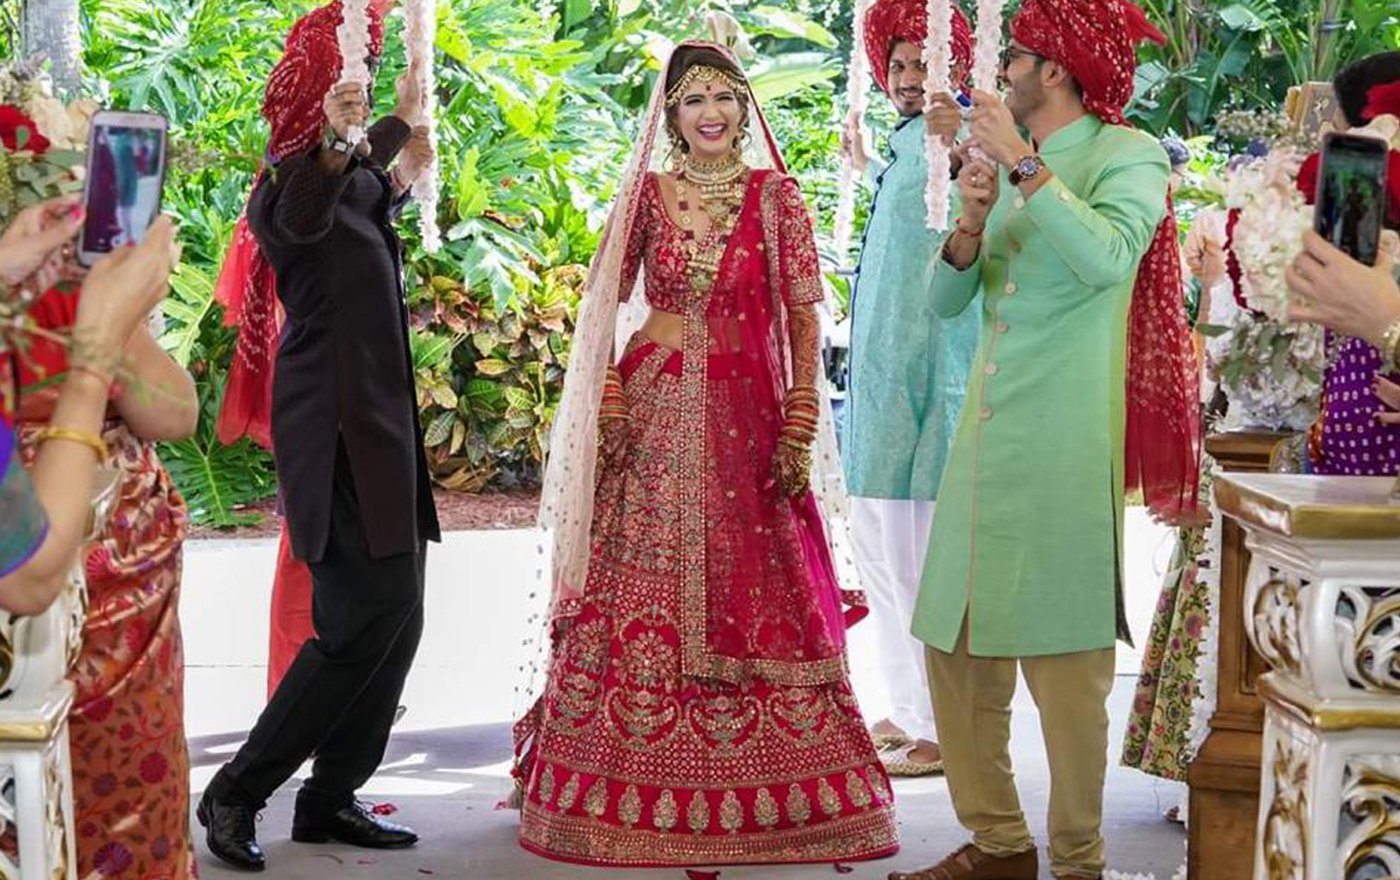 Indian Bride Buys Her Bridal Lehenga through Video Shopping